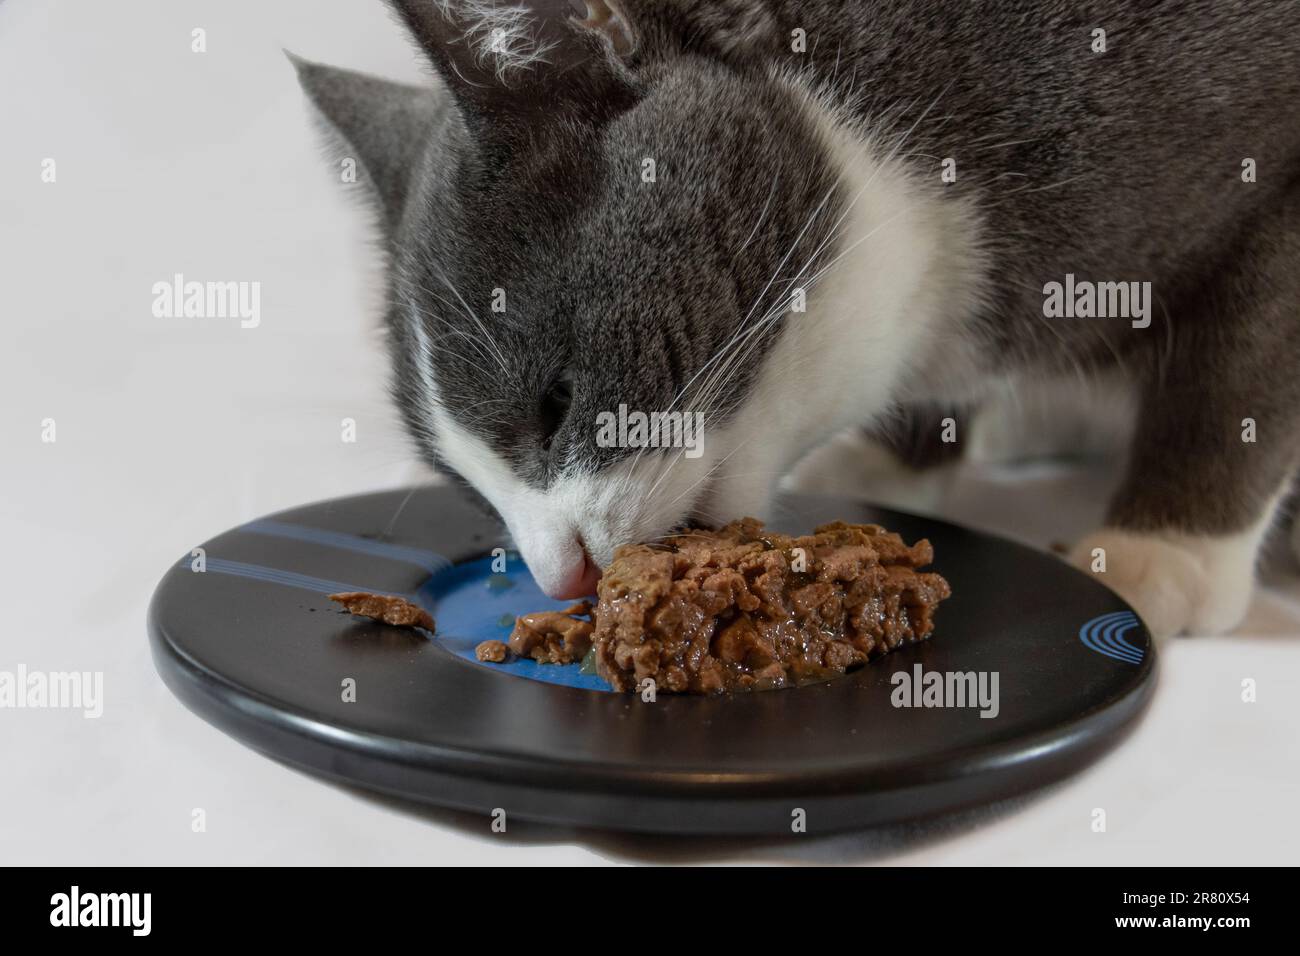 Gatto grigio e bianco che mangia cibo umido da un piatto con sfondo chiaro Foto Stock